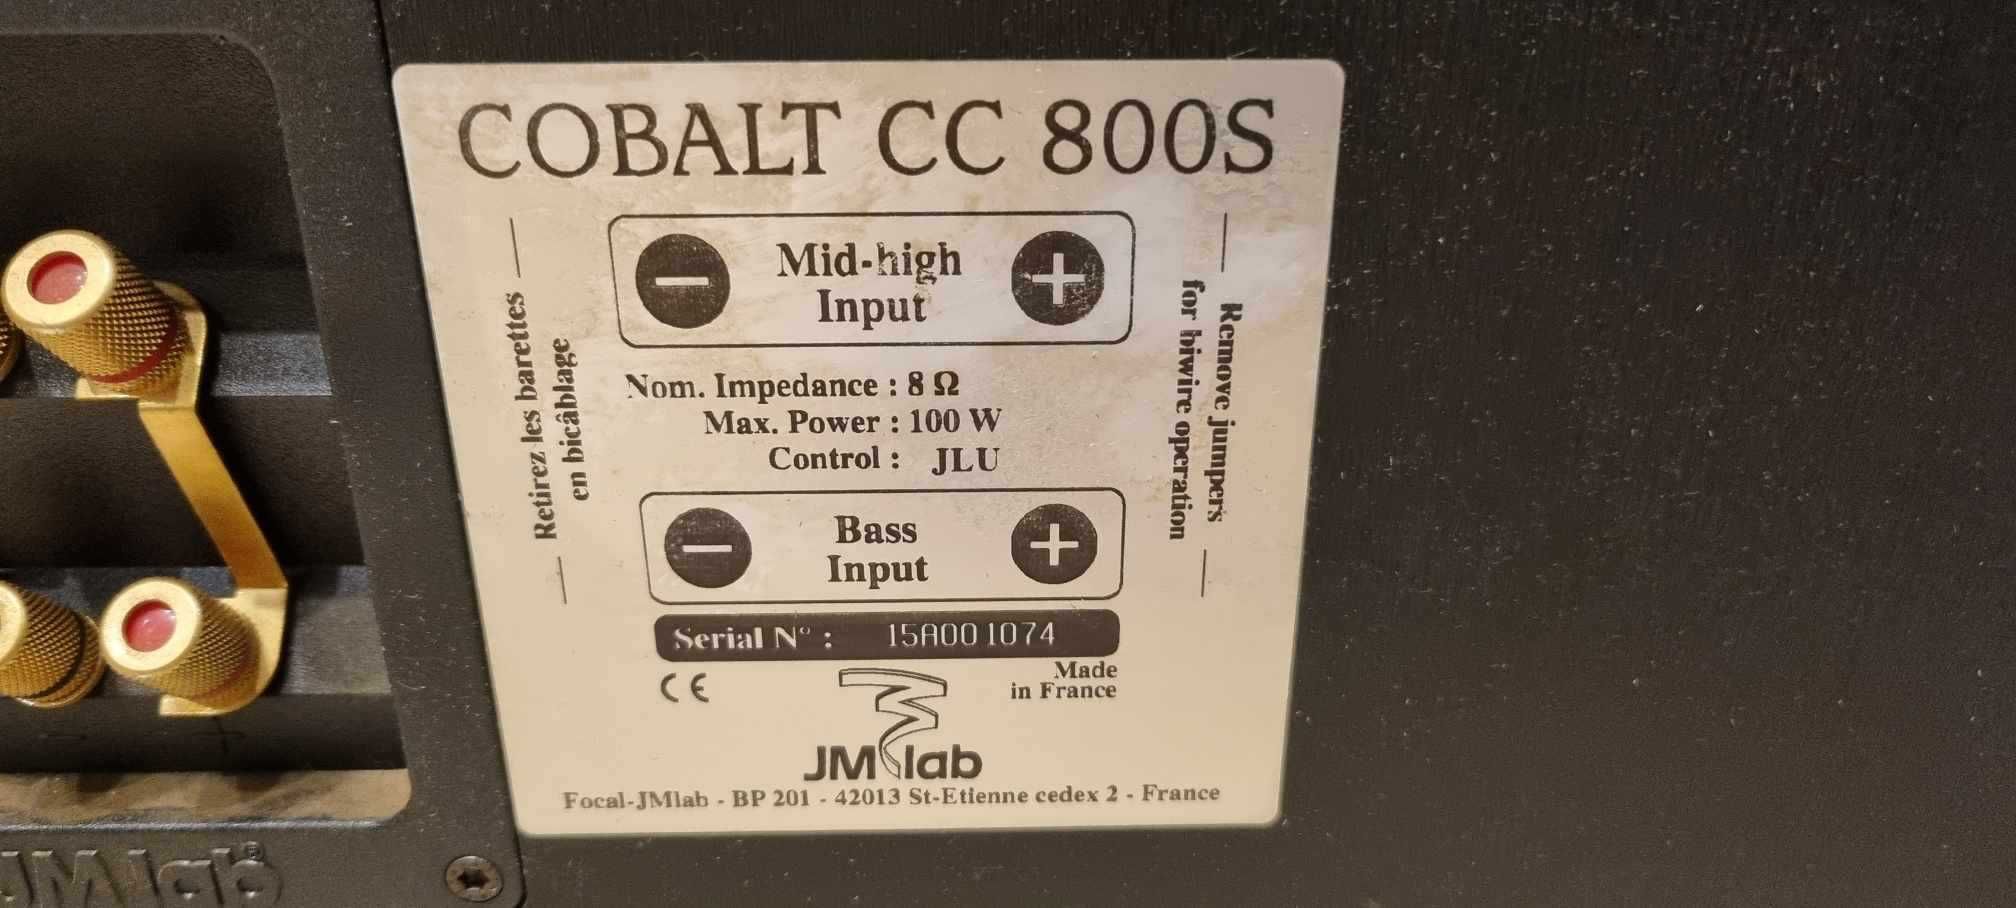 JMLAB COBALT 816S + Jmlab Cobalt CC 800S